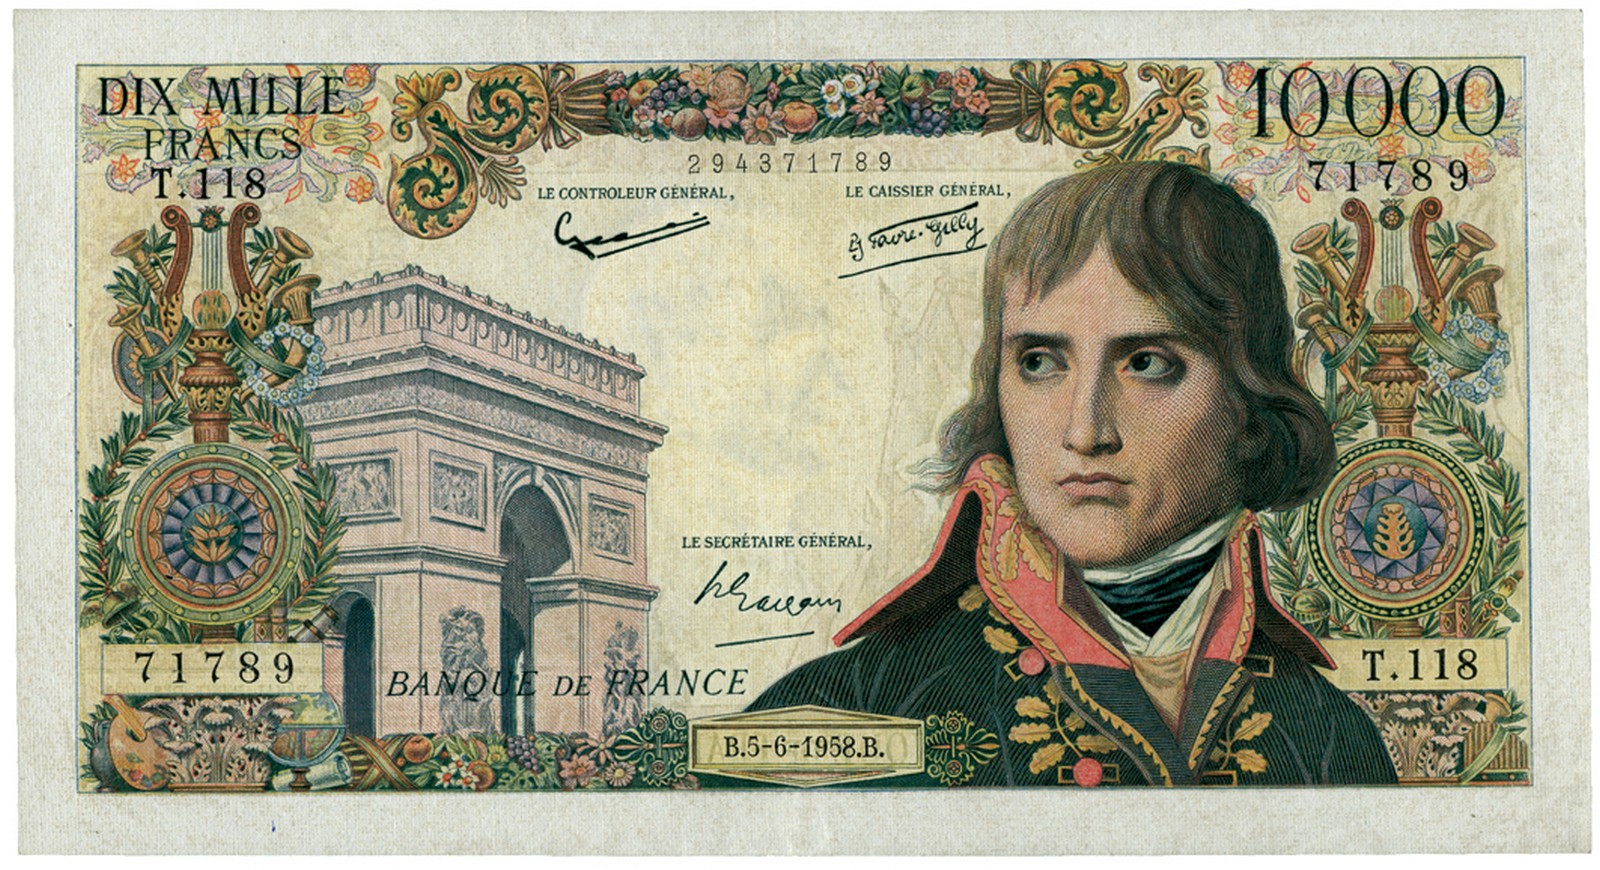 BANKNOTES, 紙鈔, FRANCE, 法國, Banque de France: 10,000-Francs, 5 June 1958, serial no.T.118 71789,